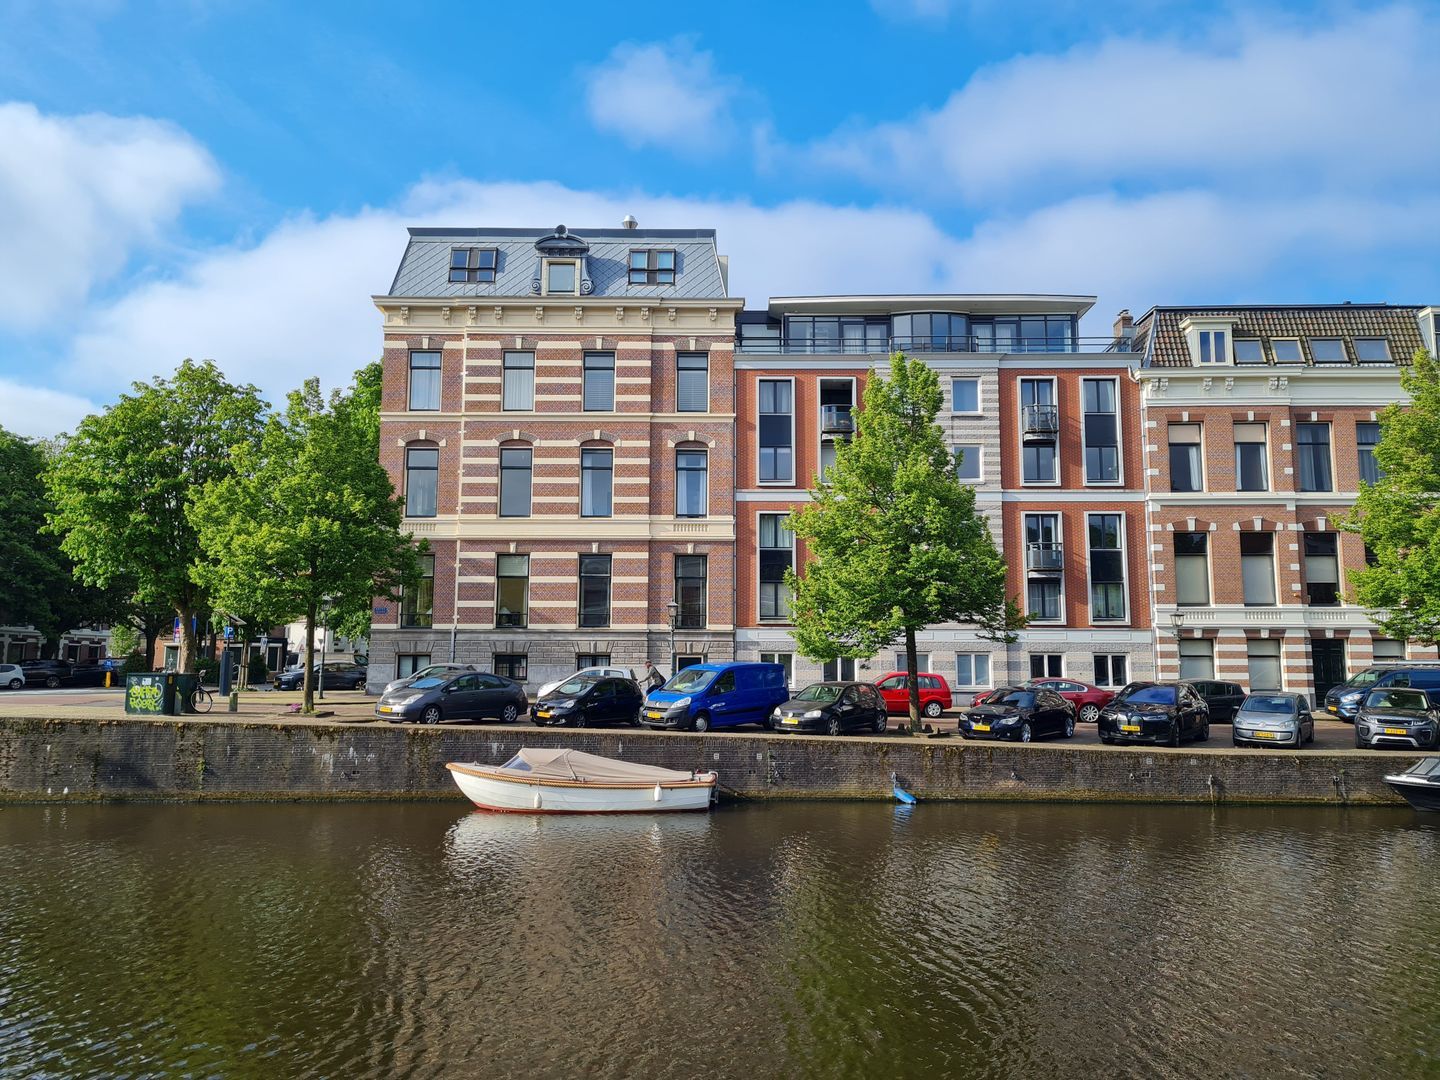 Bekijk foto 1/41 van apartment in Haarlem